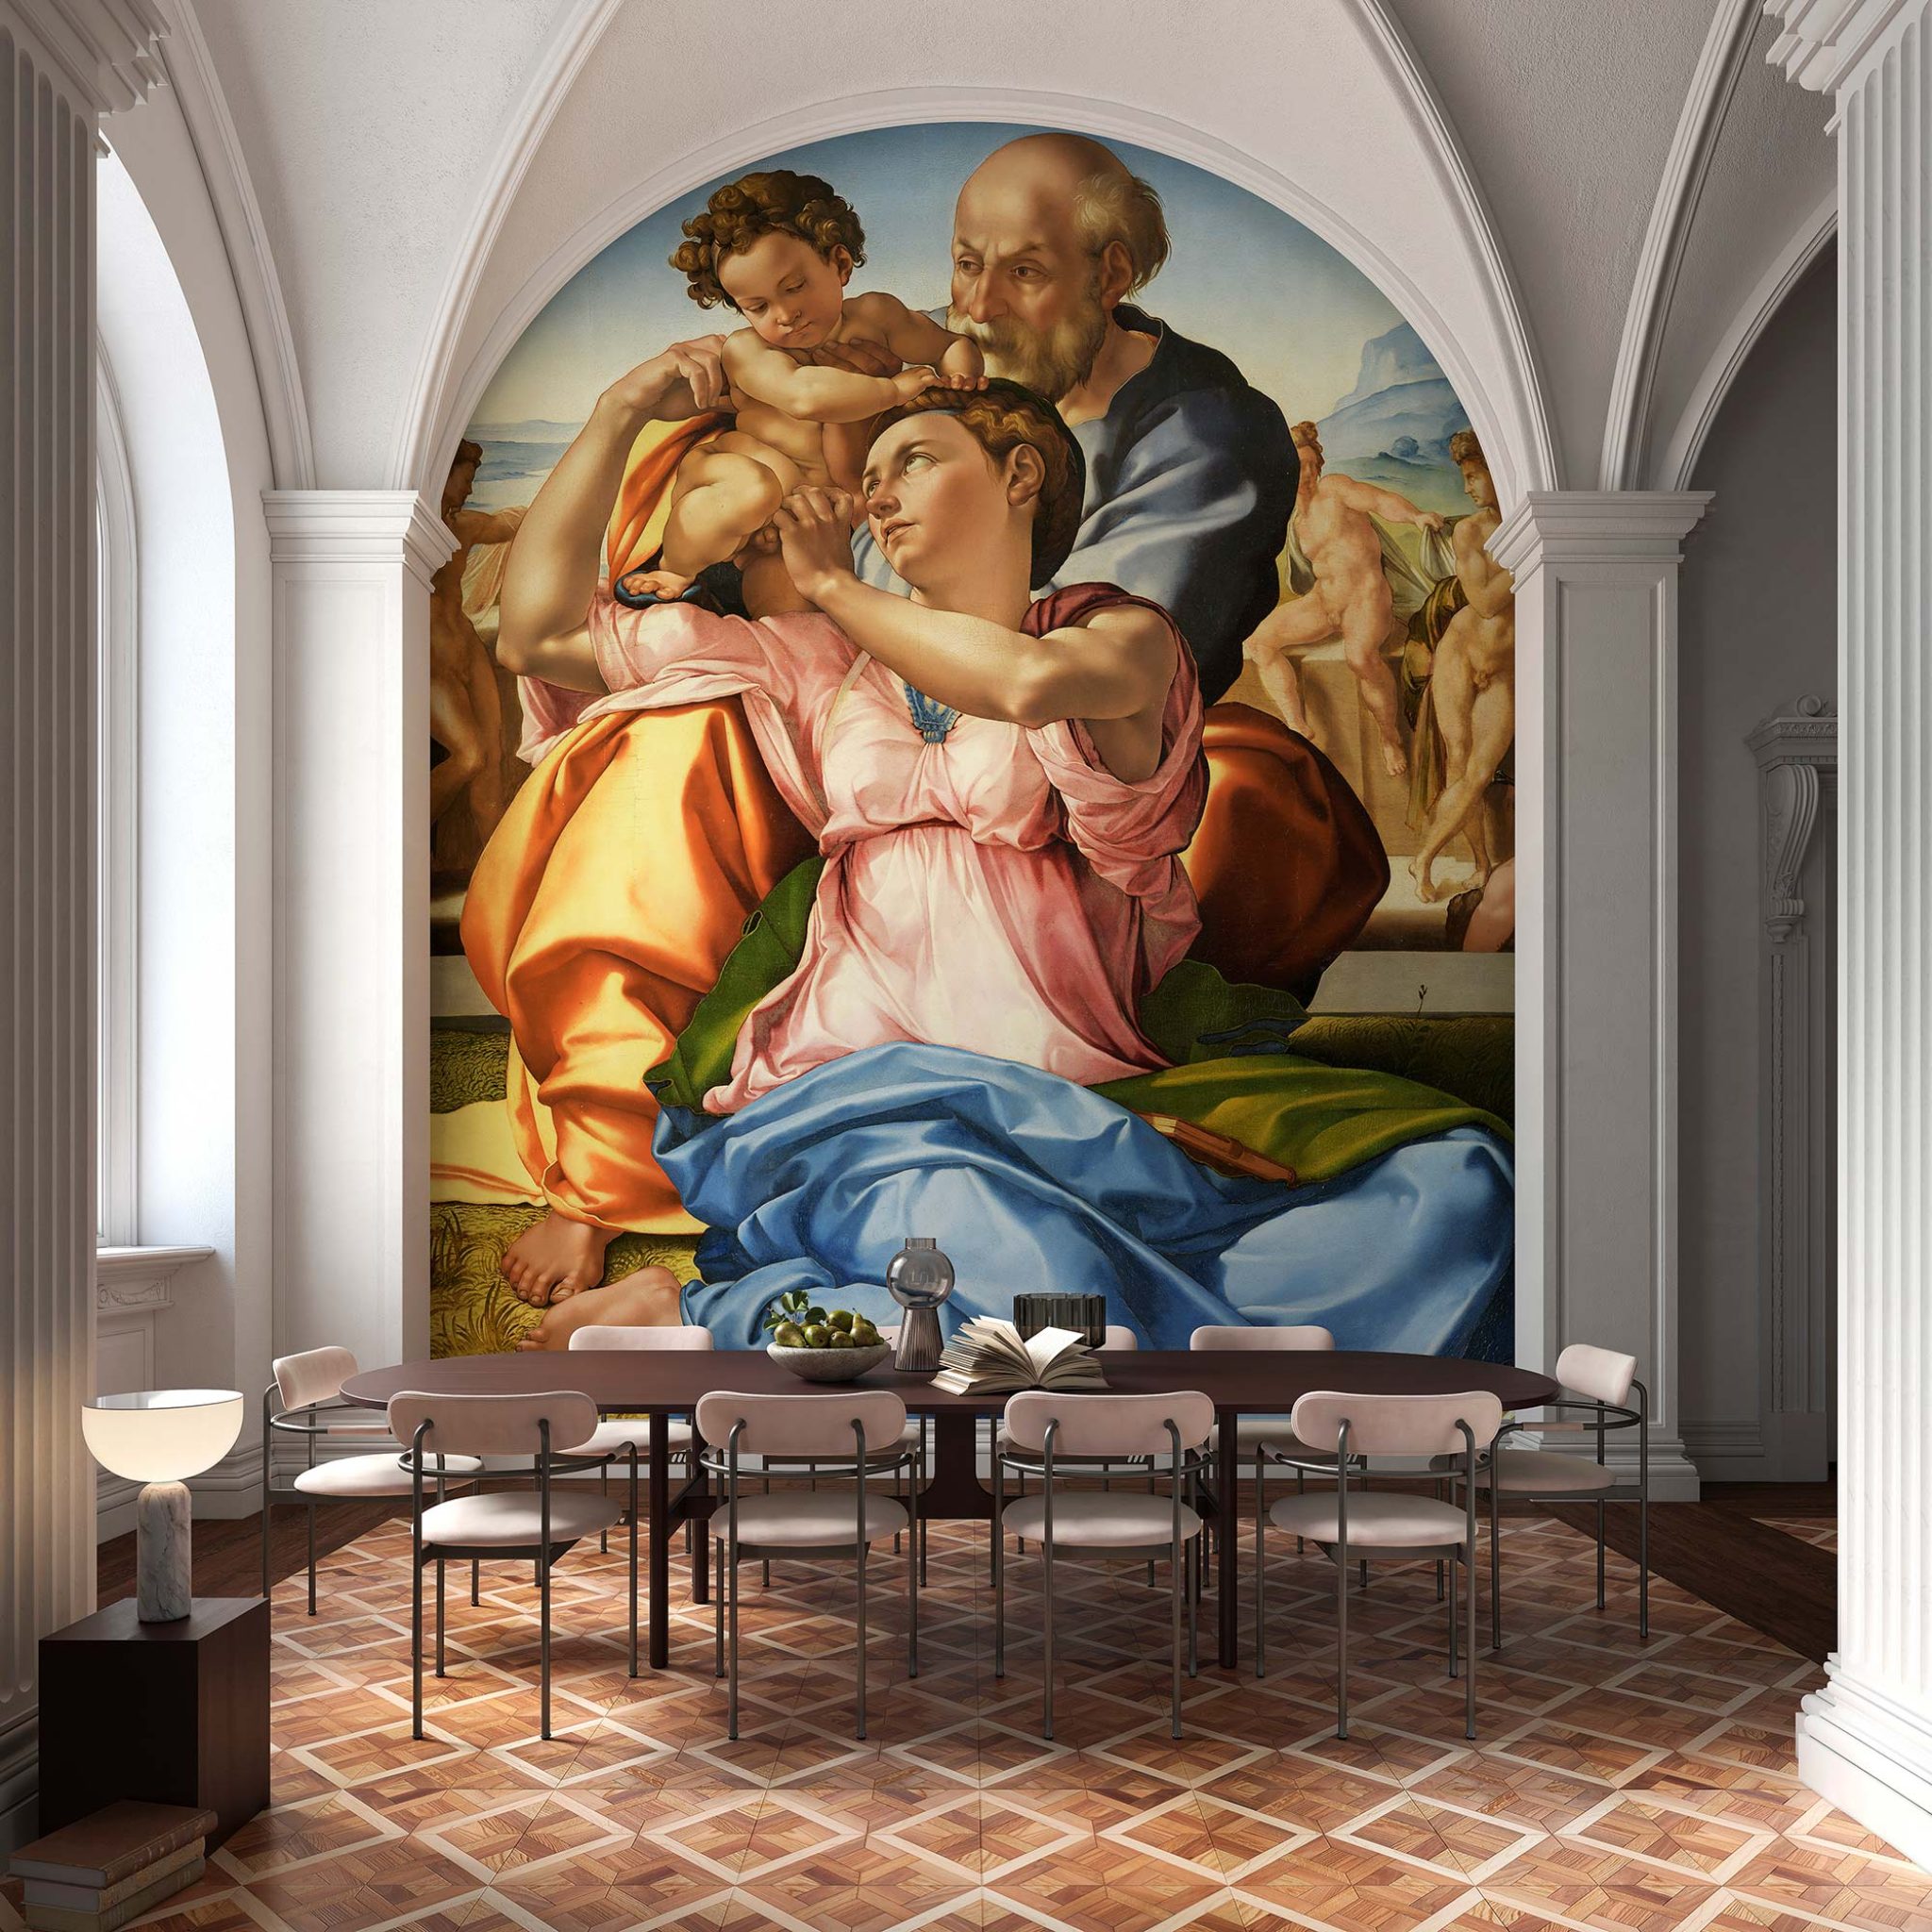 Papel pintado | Michelangelo Buonarroti: Sagrada Familia - Tecnografica